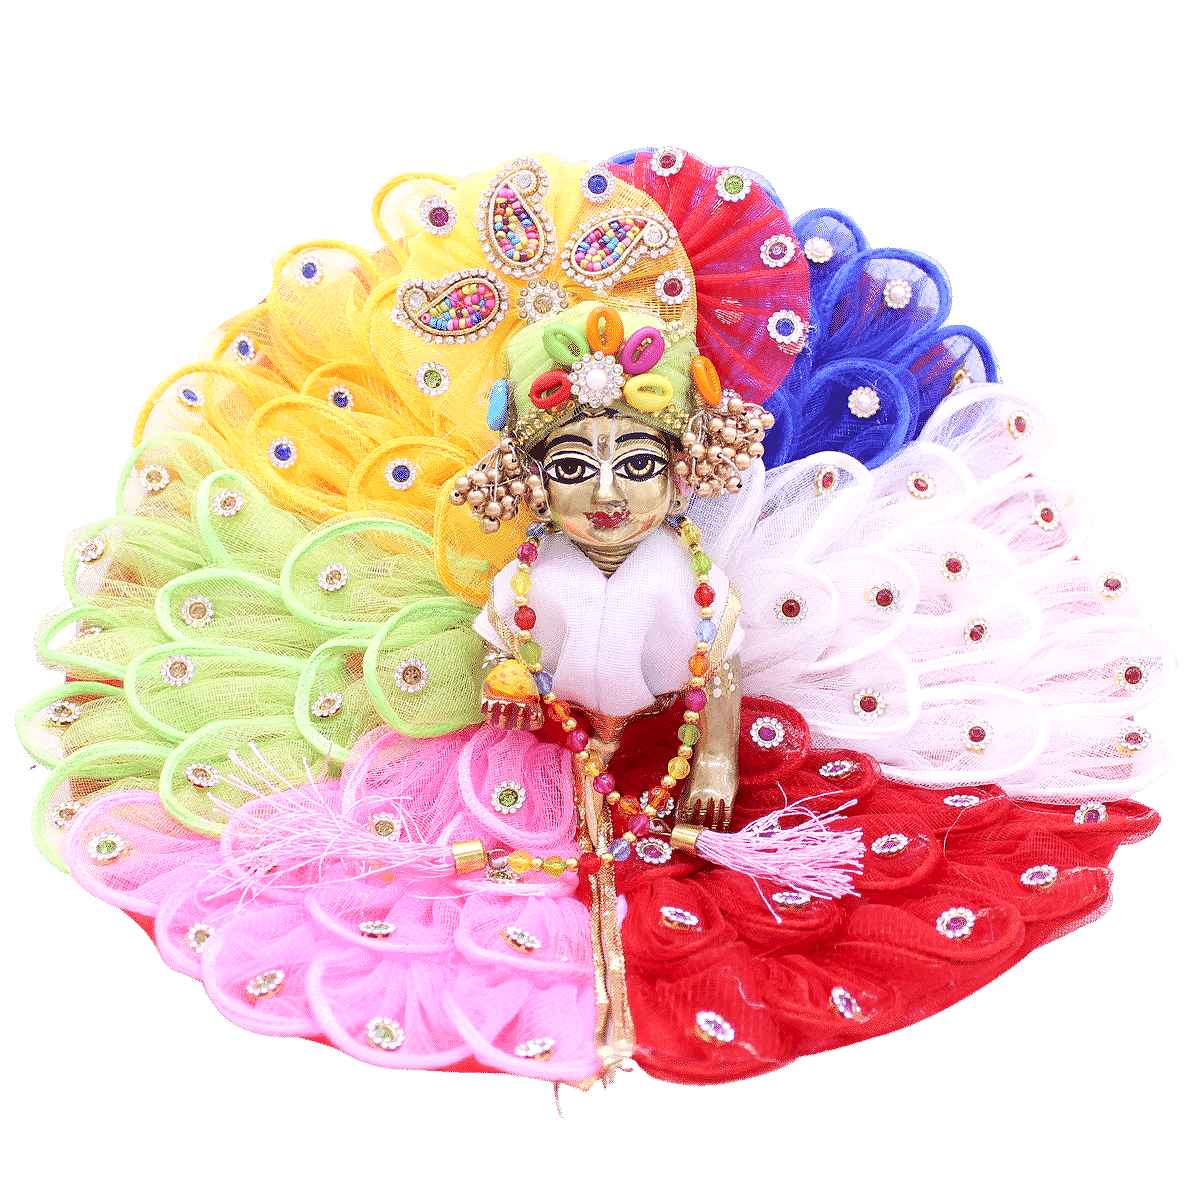 Bal Gopal Winter Dress, Kanha Ji Poshak, Bal Gopal Poshak, Laddu Gopal  Woolen Dress, Kanha Ji Woolen Dress, Thakur Ji Dress, Crochet Dress - Etsy  Norway